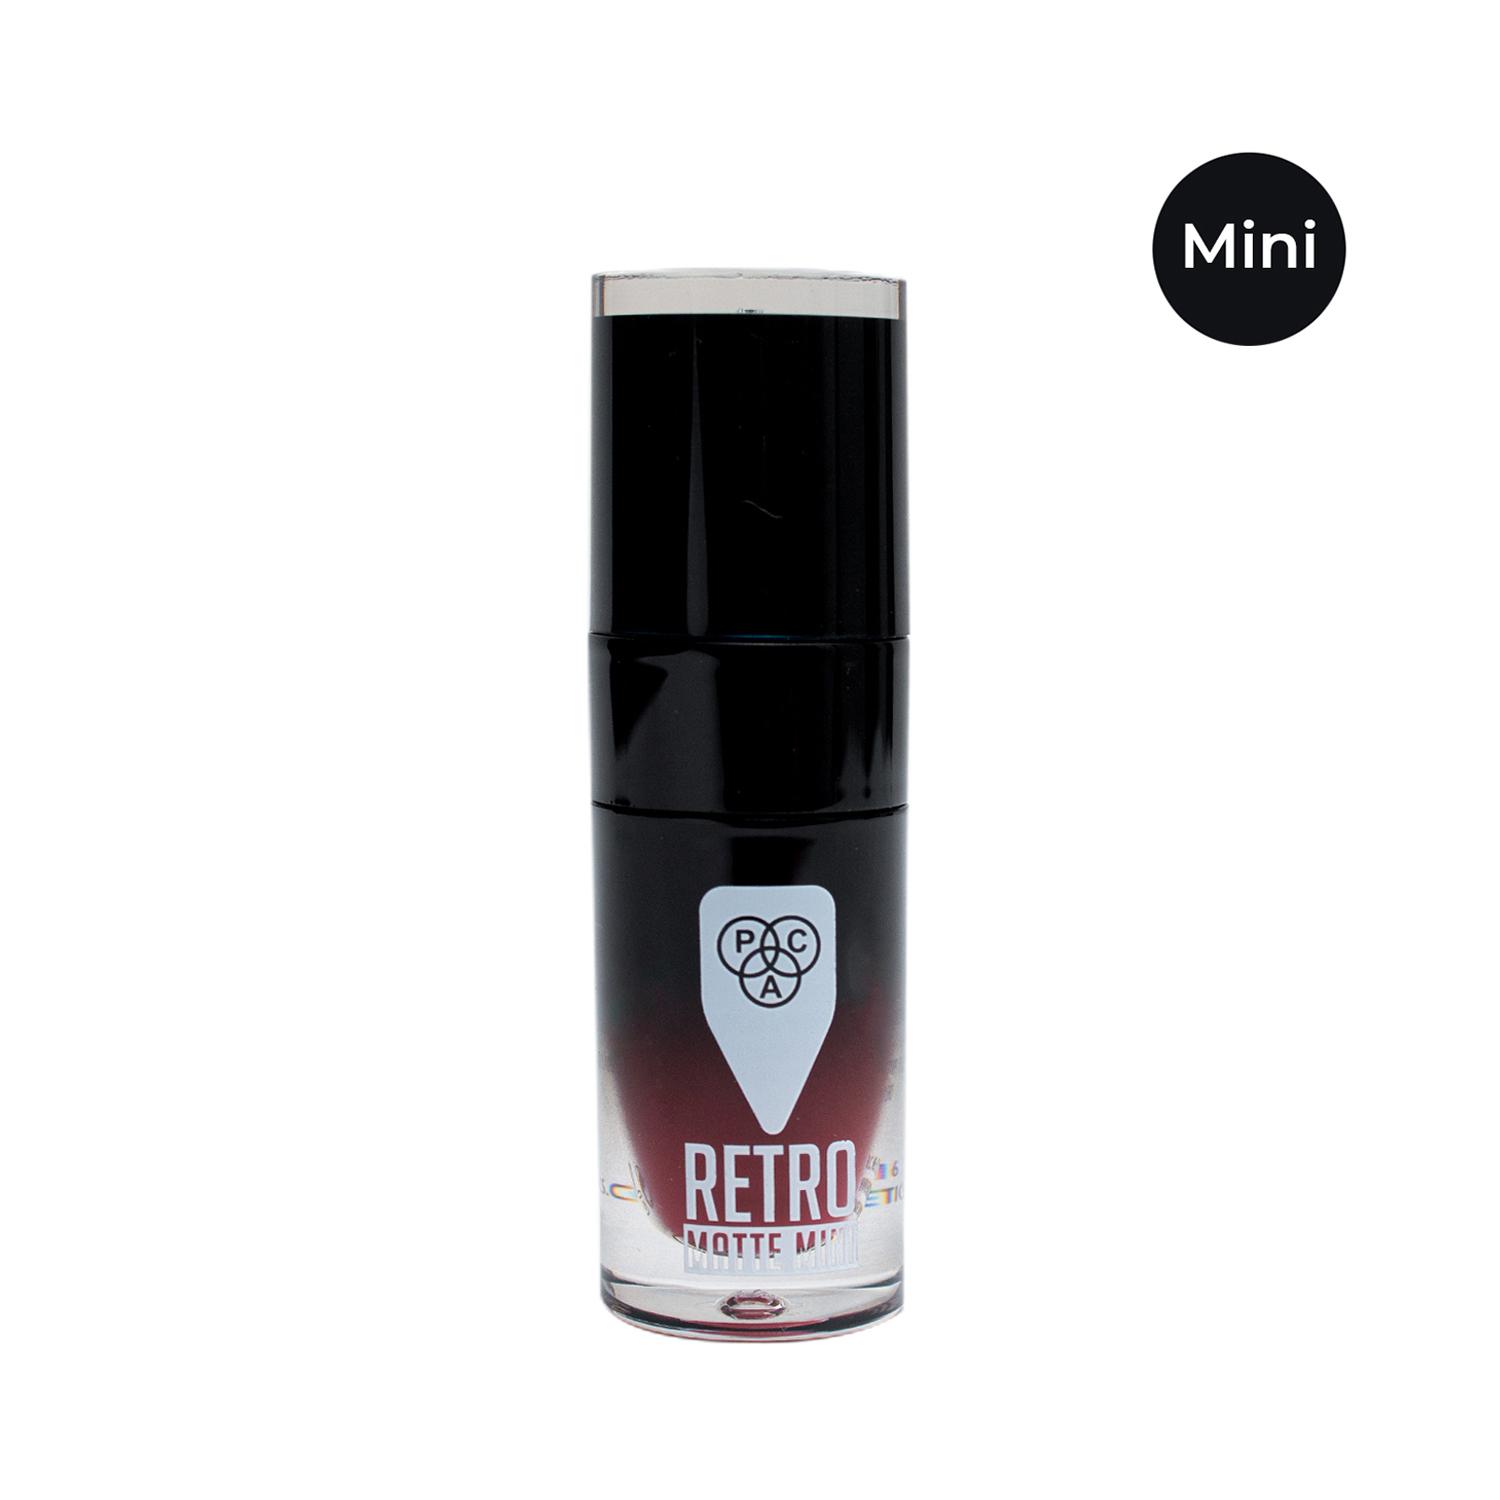 PAC | PAC Retro Matte Gloss Mini Liquid Lipstick - 11 Pretty In Pink (3ml)